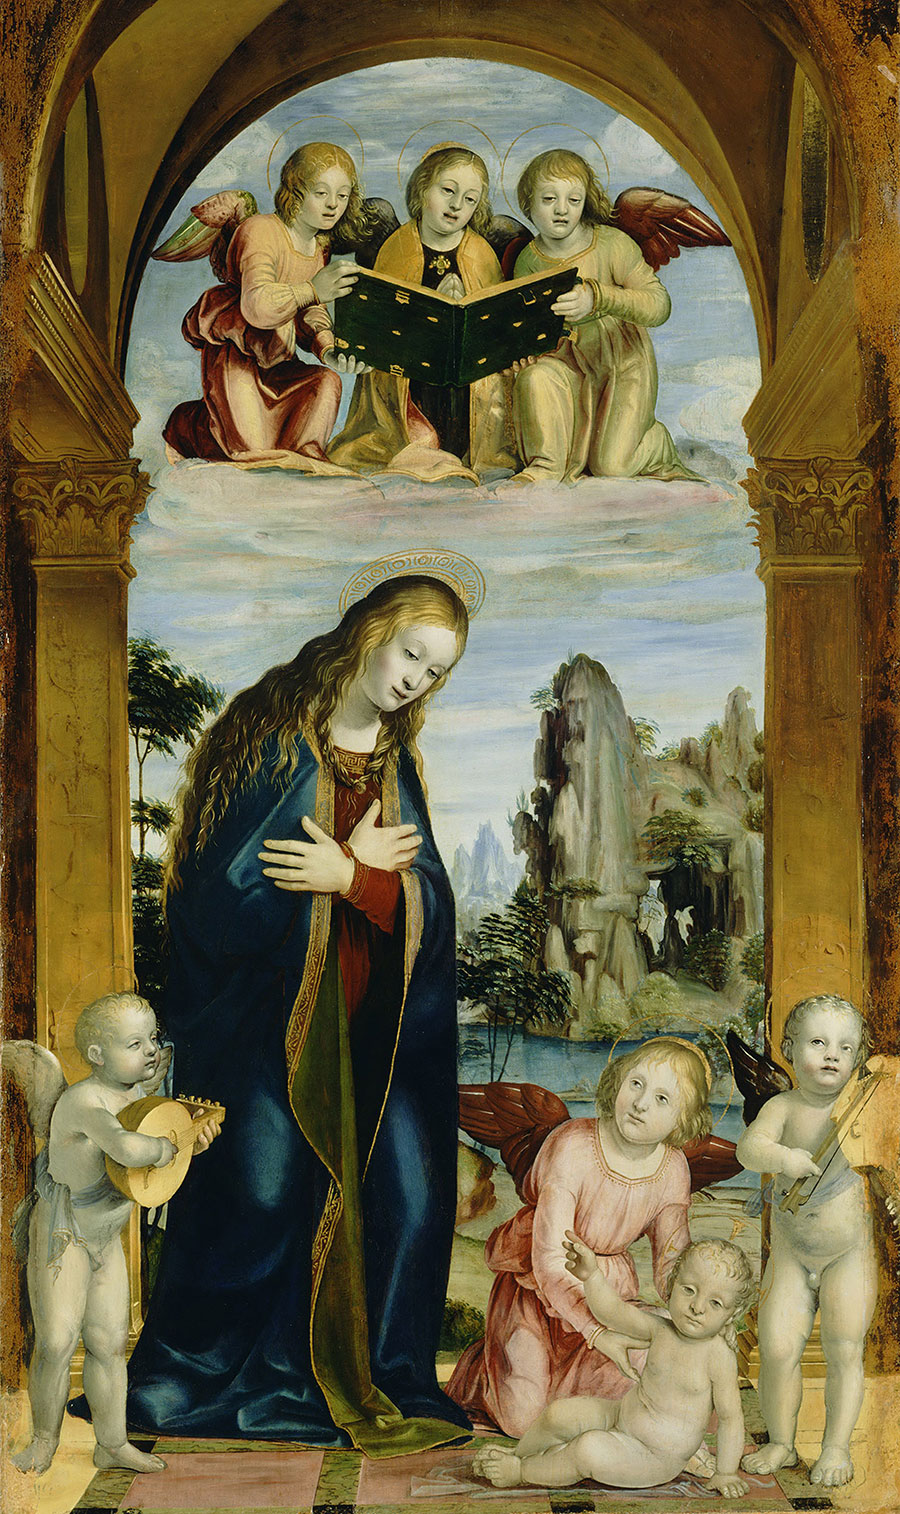 达芬奇作品 : 穿深蓝色披风的圣母在送福